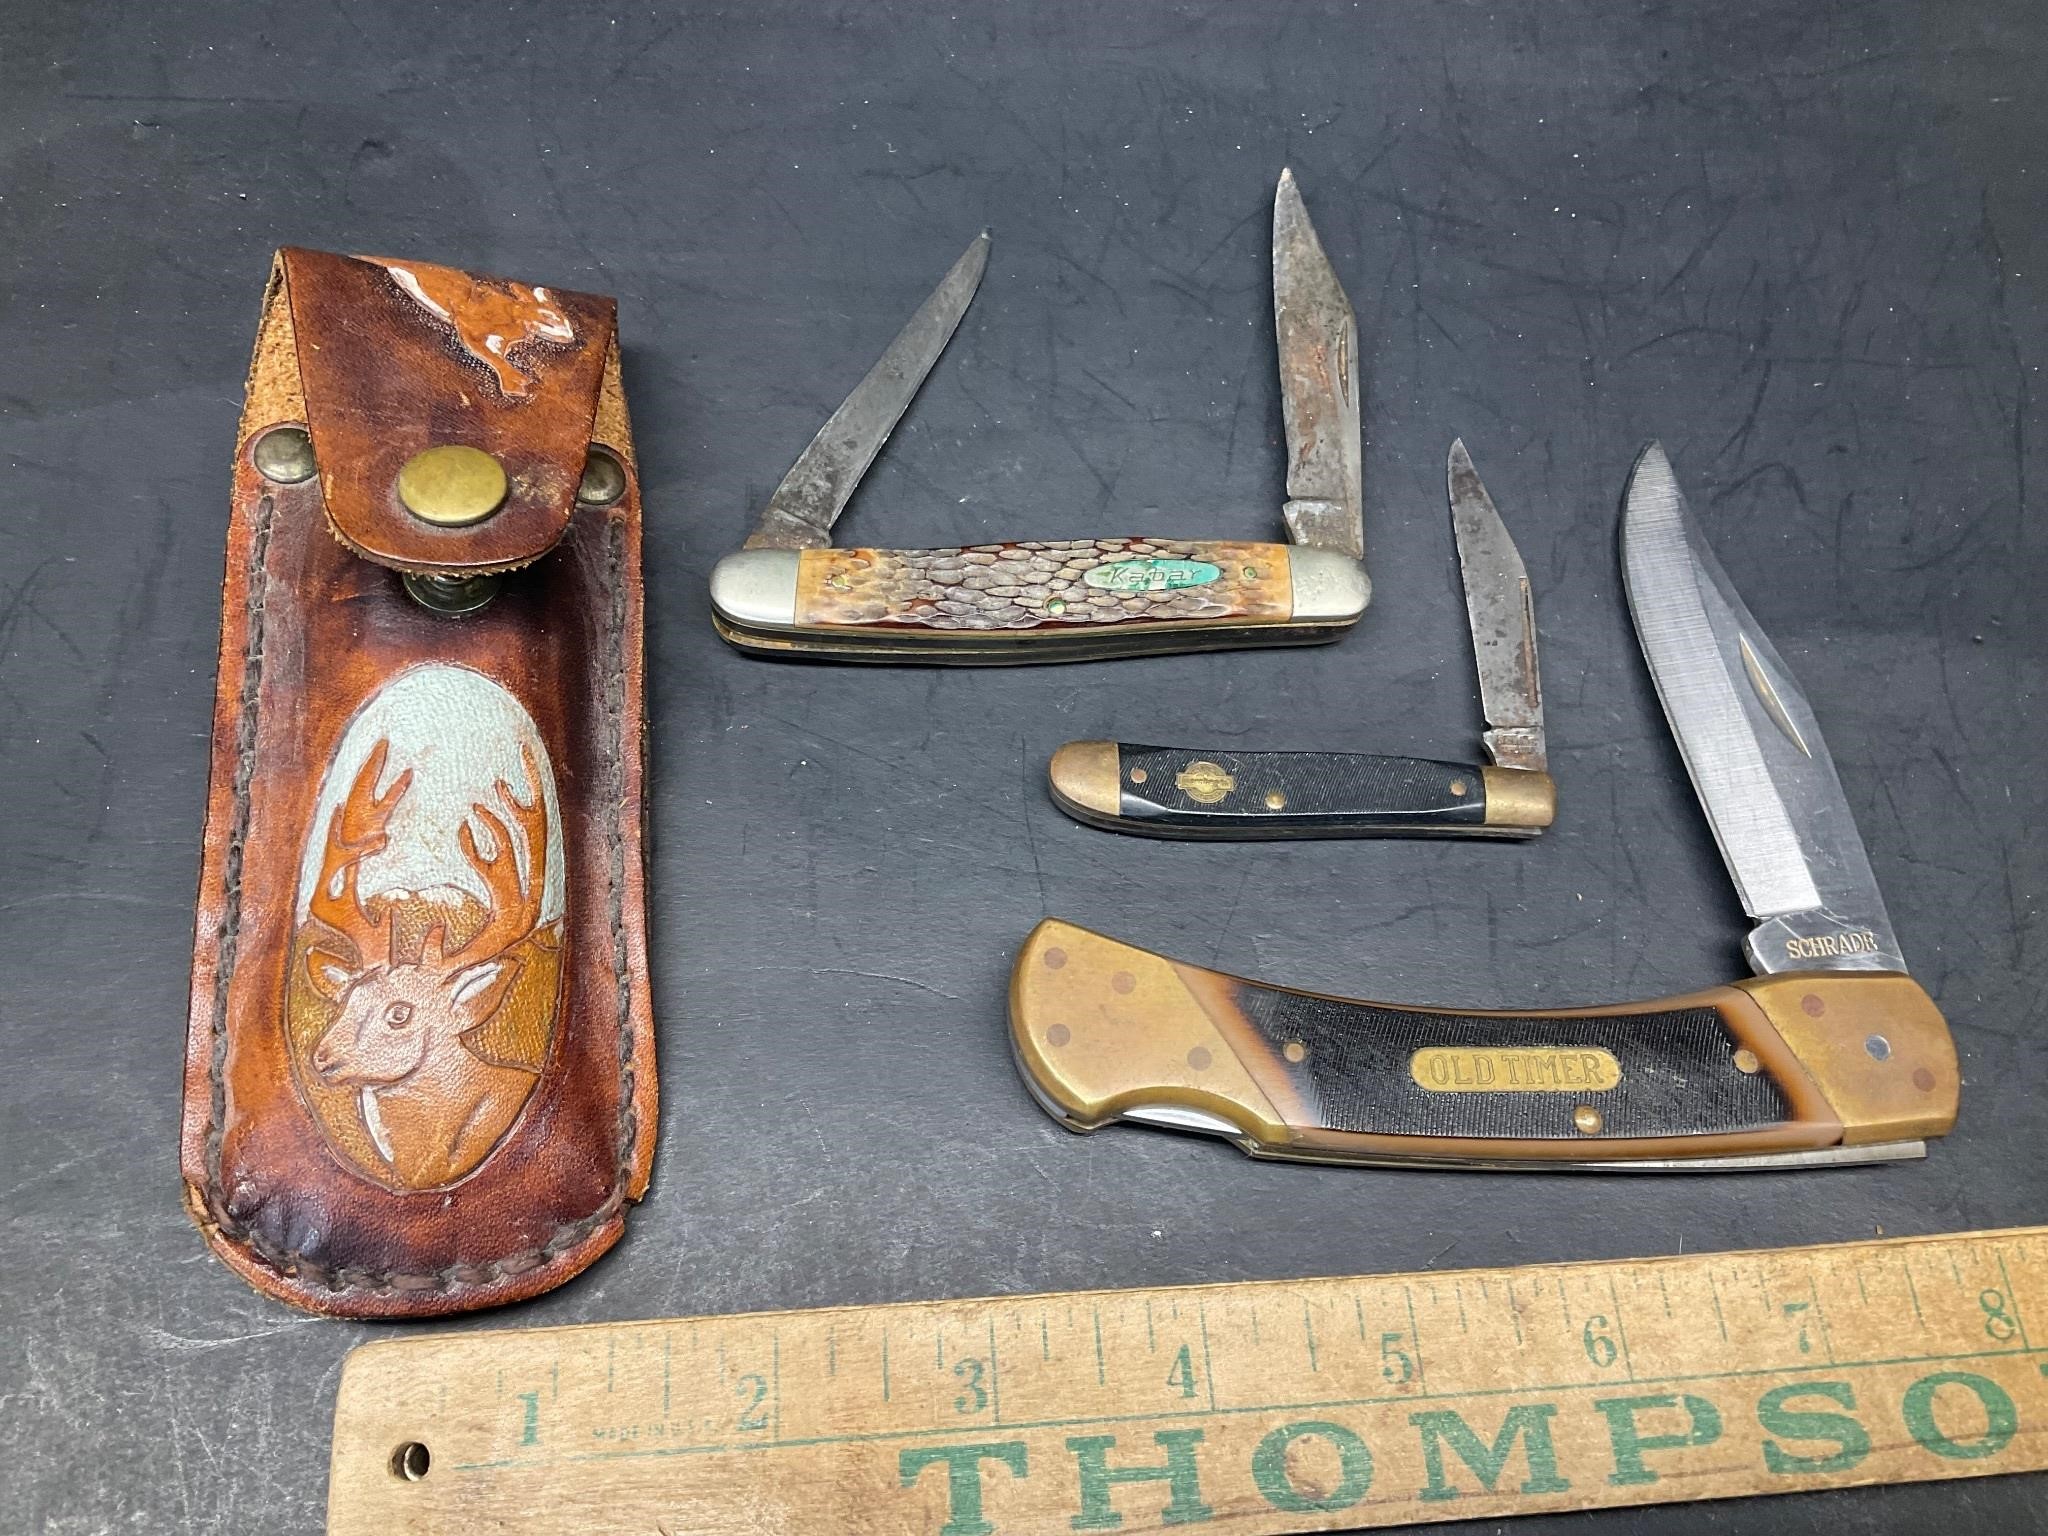 Old Timer, Kbar,and Copenhagen knives